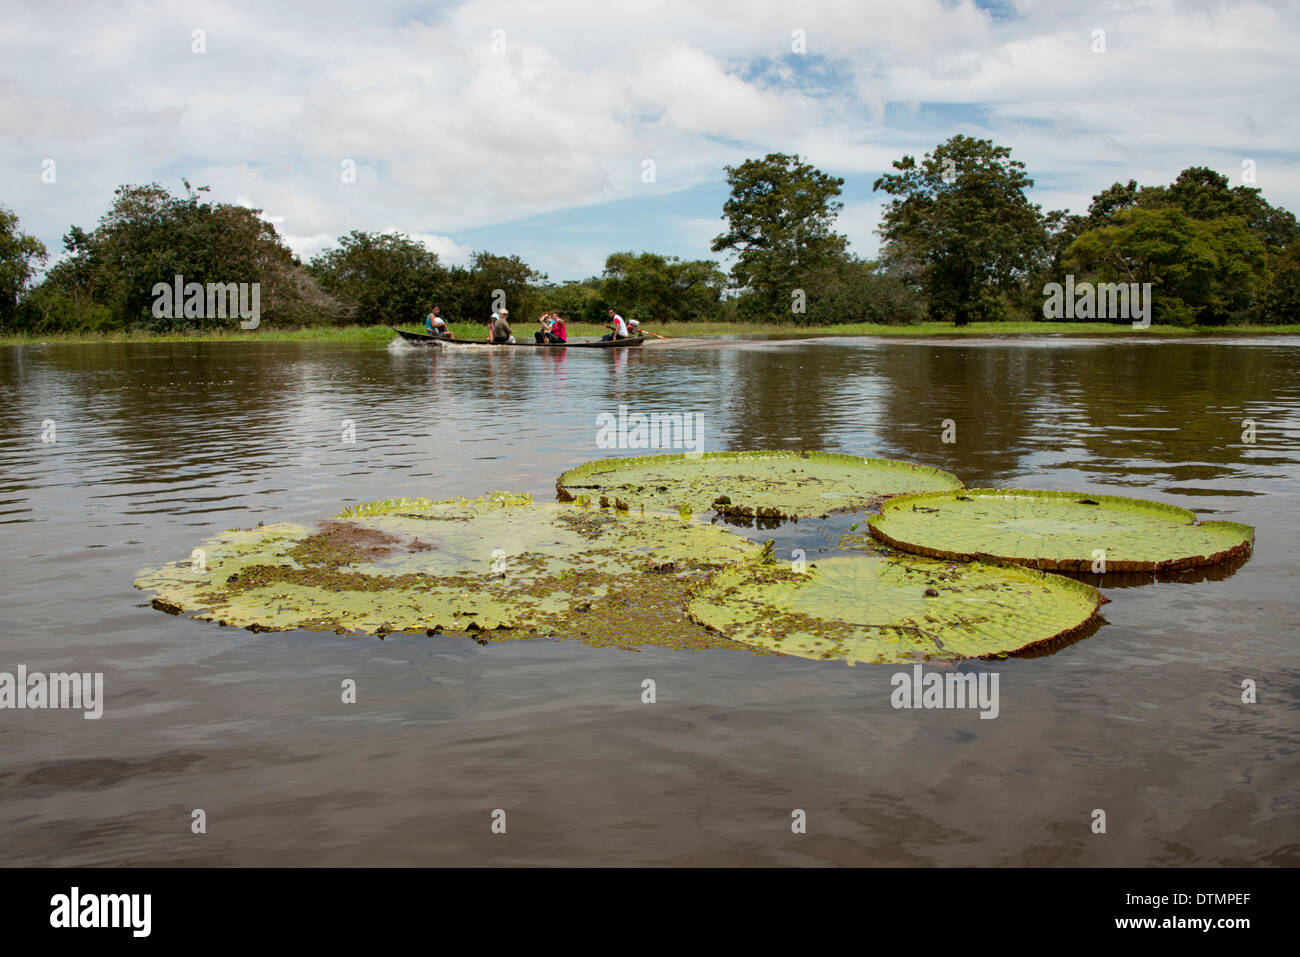 Il Brasile, Amazon, Valeria River, Boca da Valeria. Giant Amazon Lily Pad, turisti in canoa locali turistici. Foto Stock